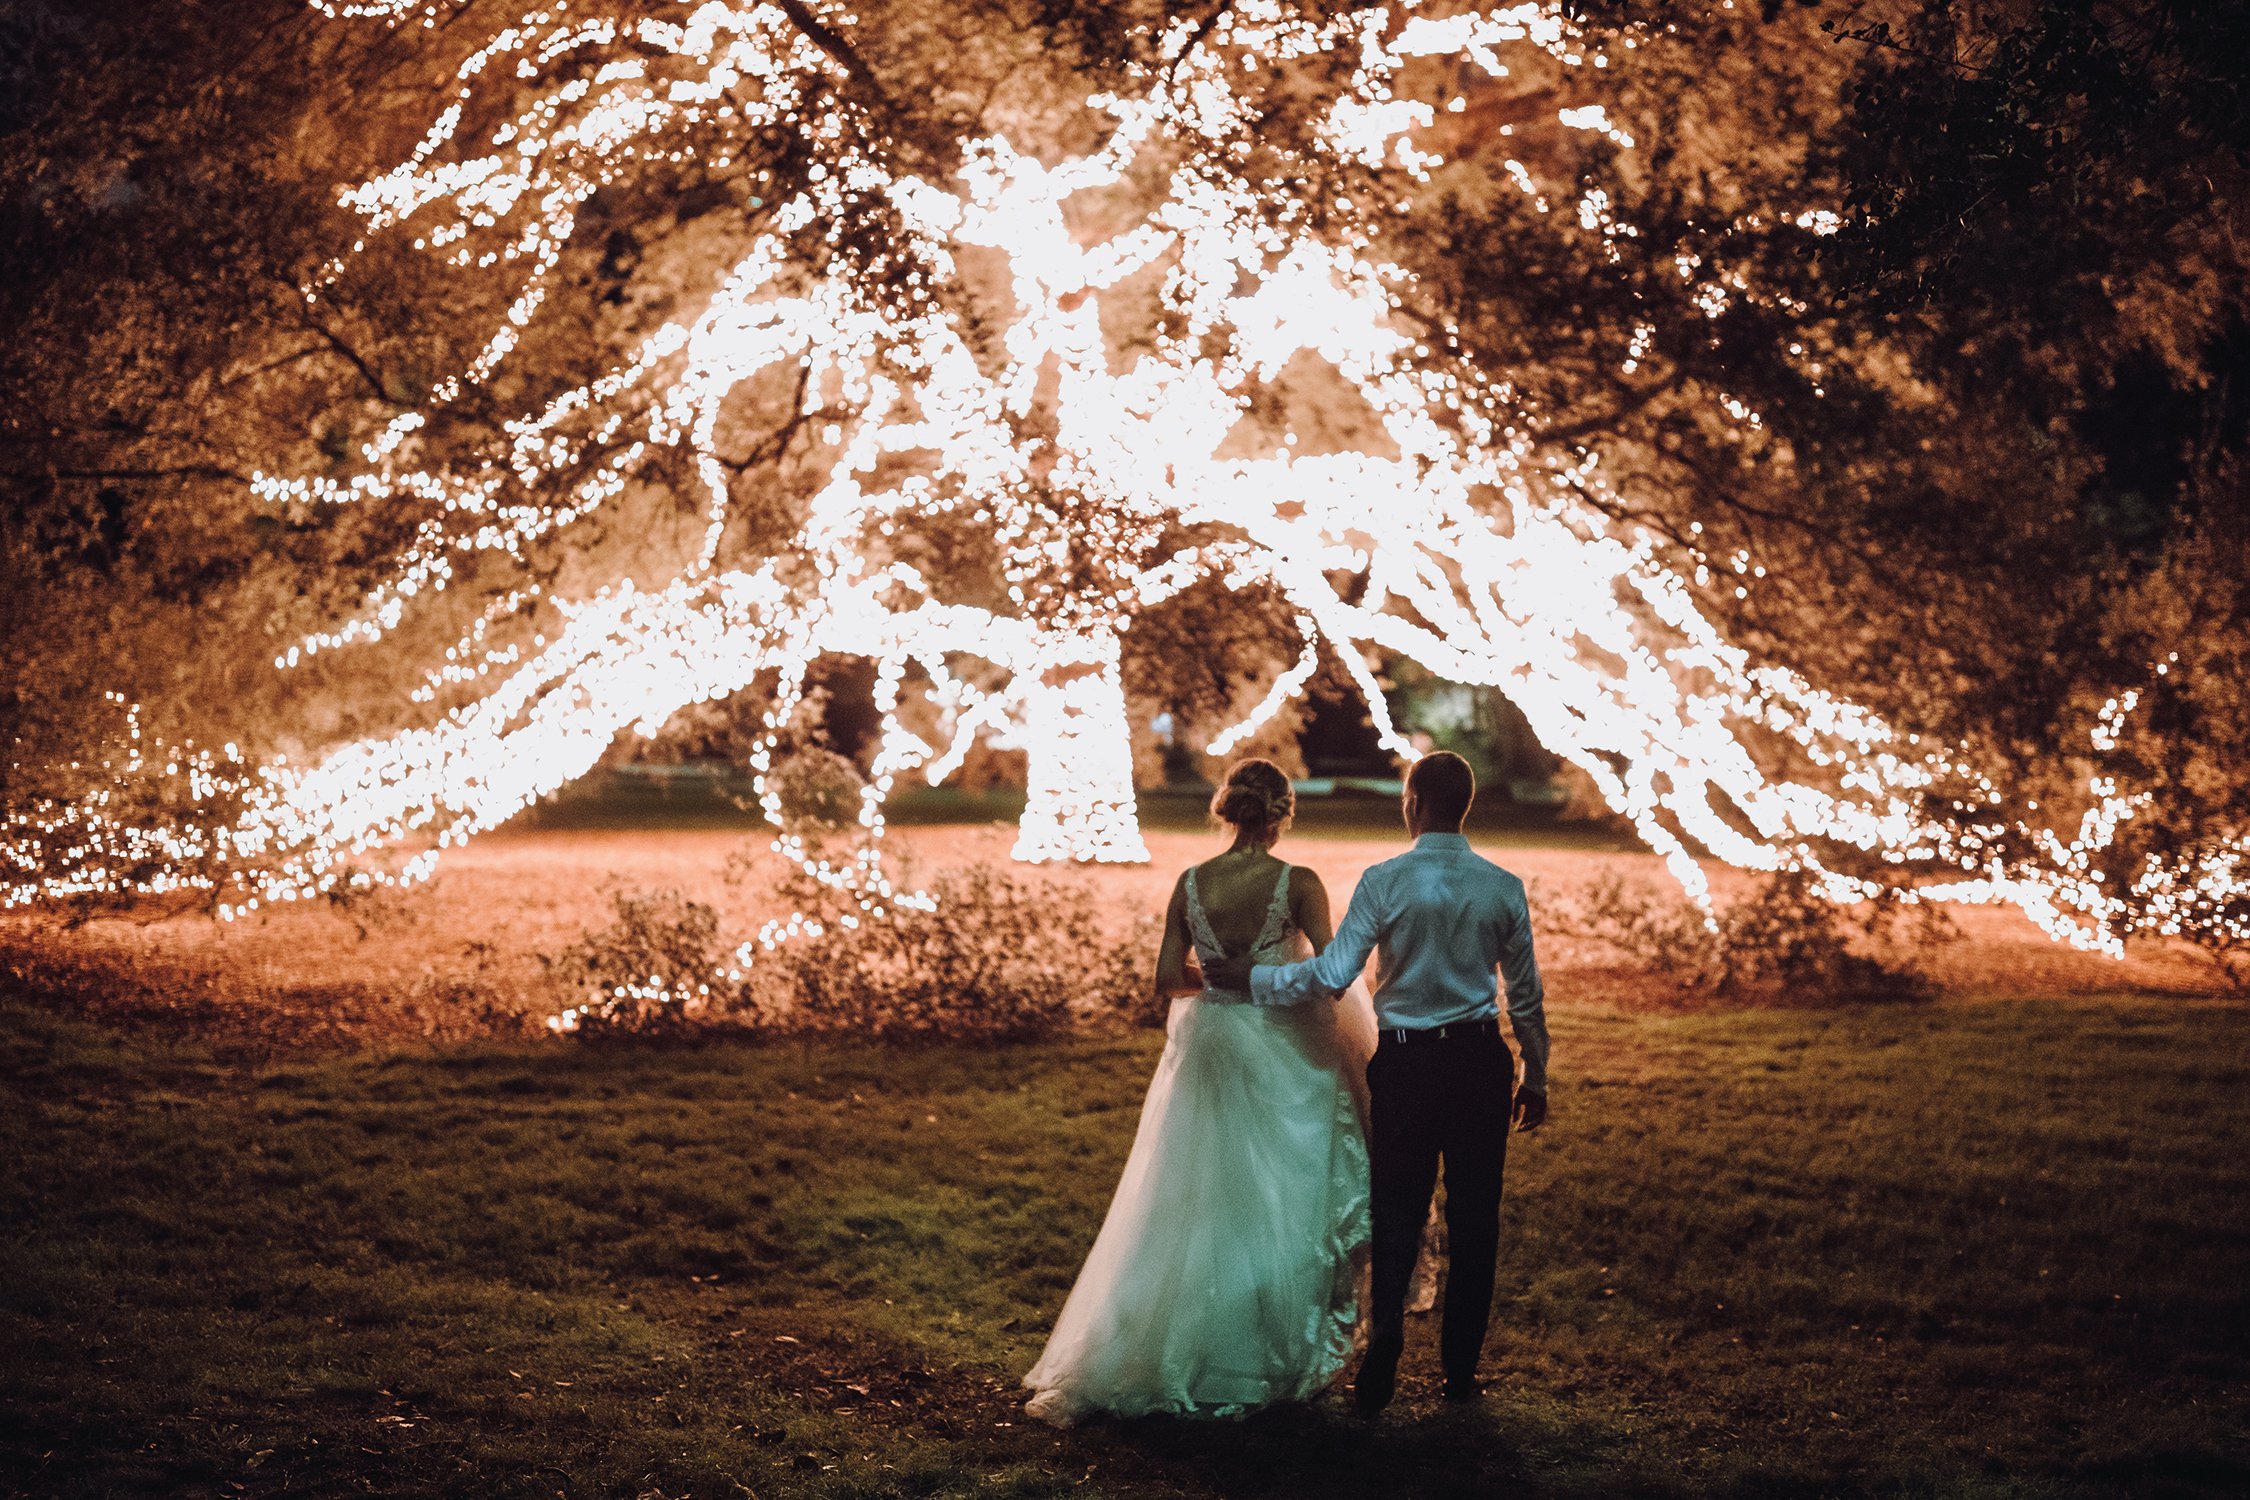 string light photo opportunities for houston weddings - houstonian hotel